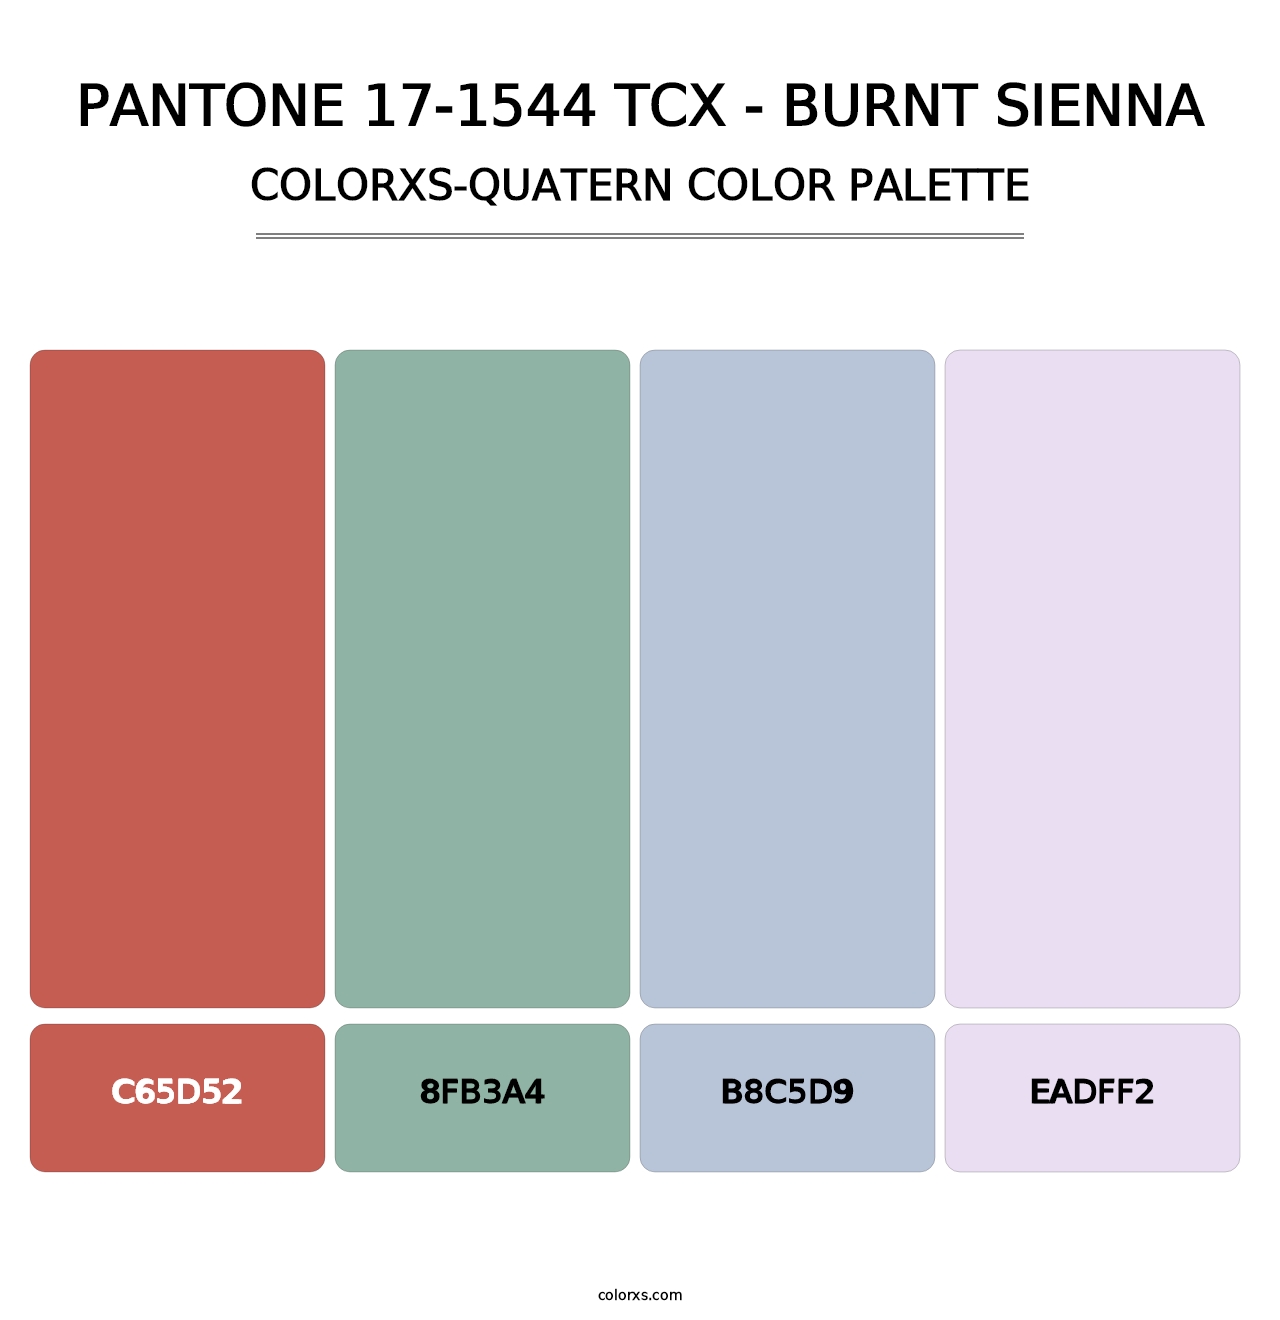 PANTONE 17-1544 TCX - Burnt Sienna - Colorxs Quatern Palette